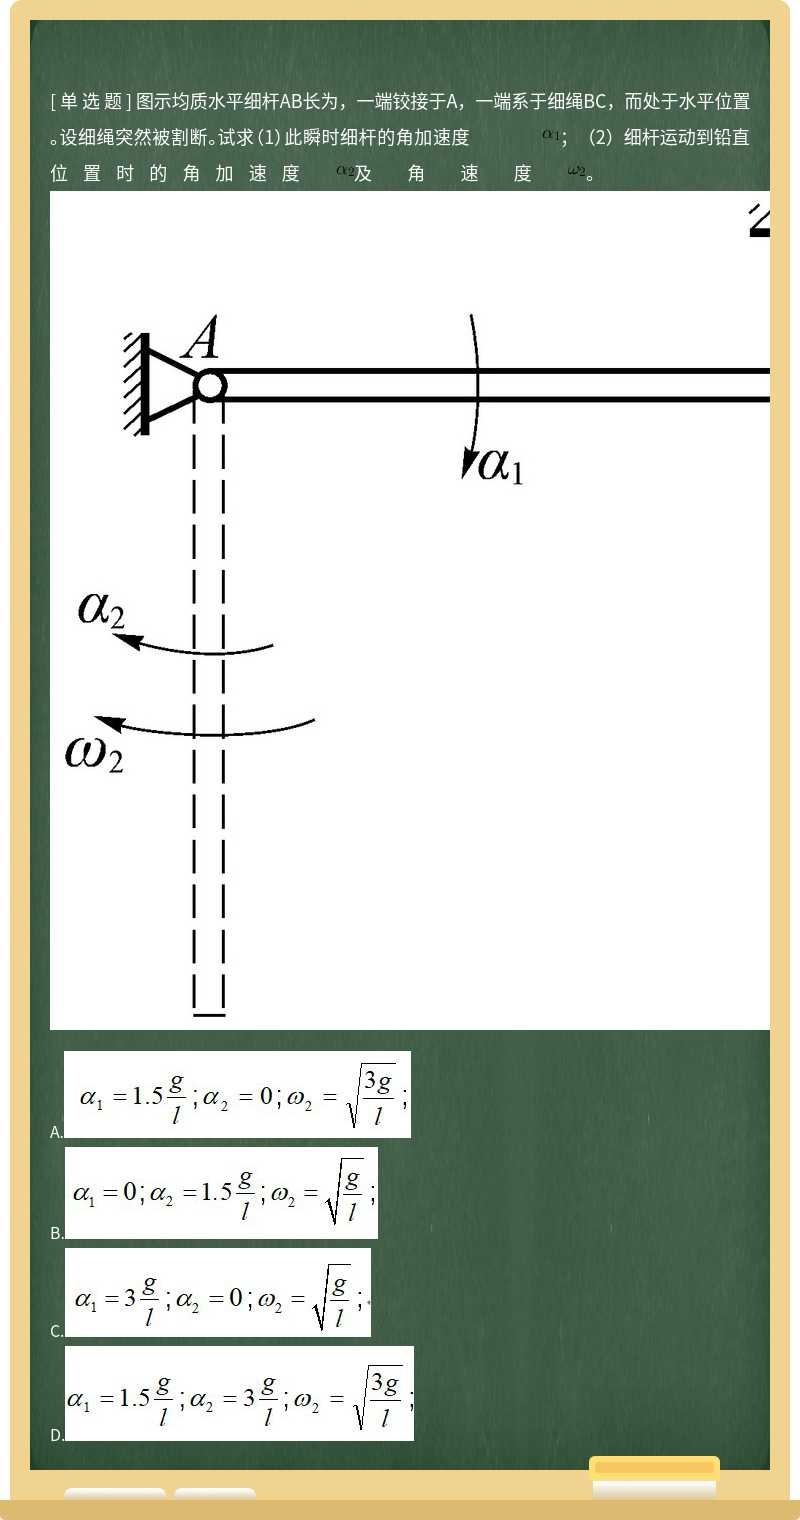 图示均质水平细杆AB长为，一端铰接于A，一端系于细绳BC，而处于水平位置。设细绳突然被割断。试求（1）此瞬时细杆的角加速度         ；（2）细杆运动到铅直位置时的角加速度         及角速度         。          